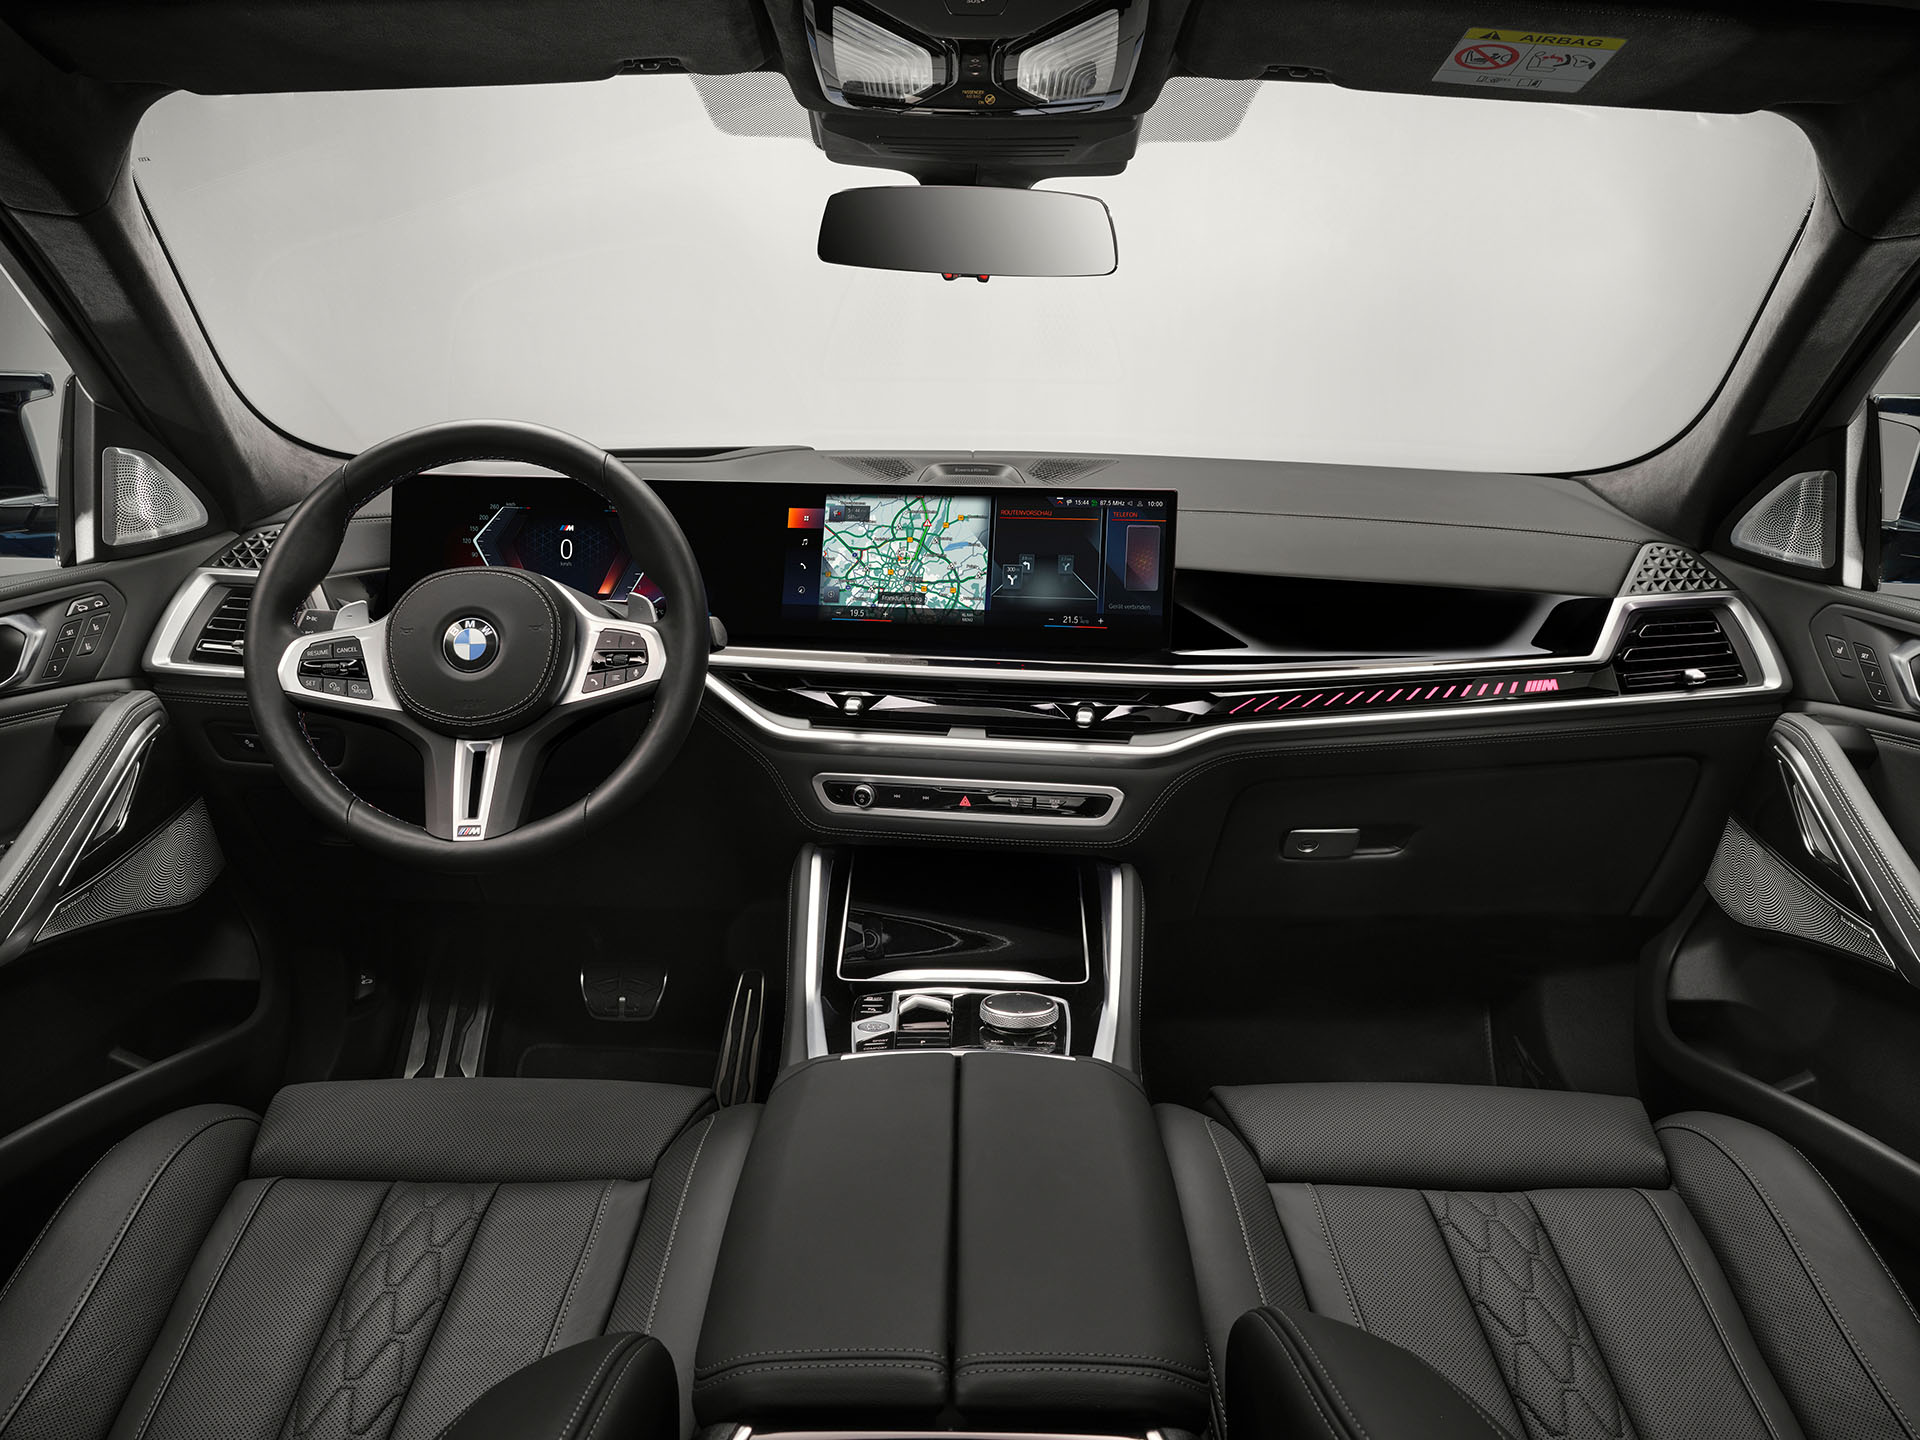 BMW X6 - технические характеристики, модельный ряд, комплектации